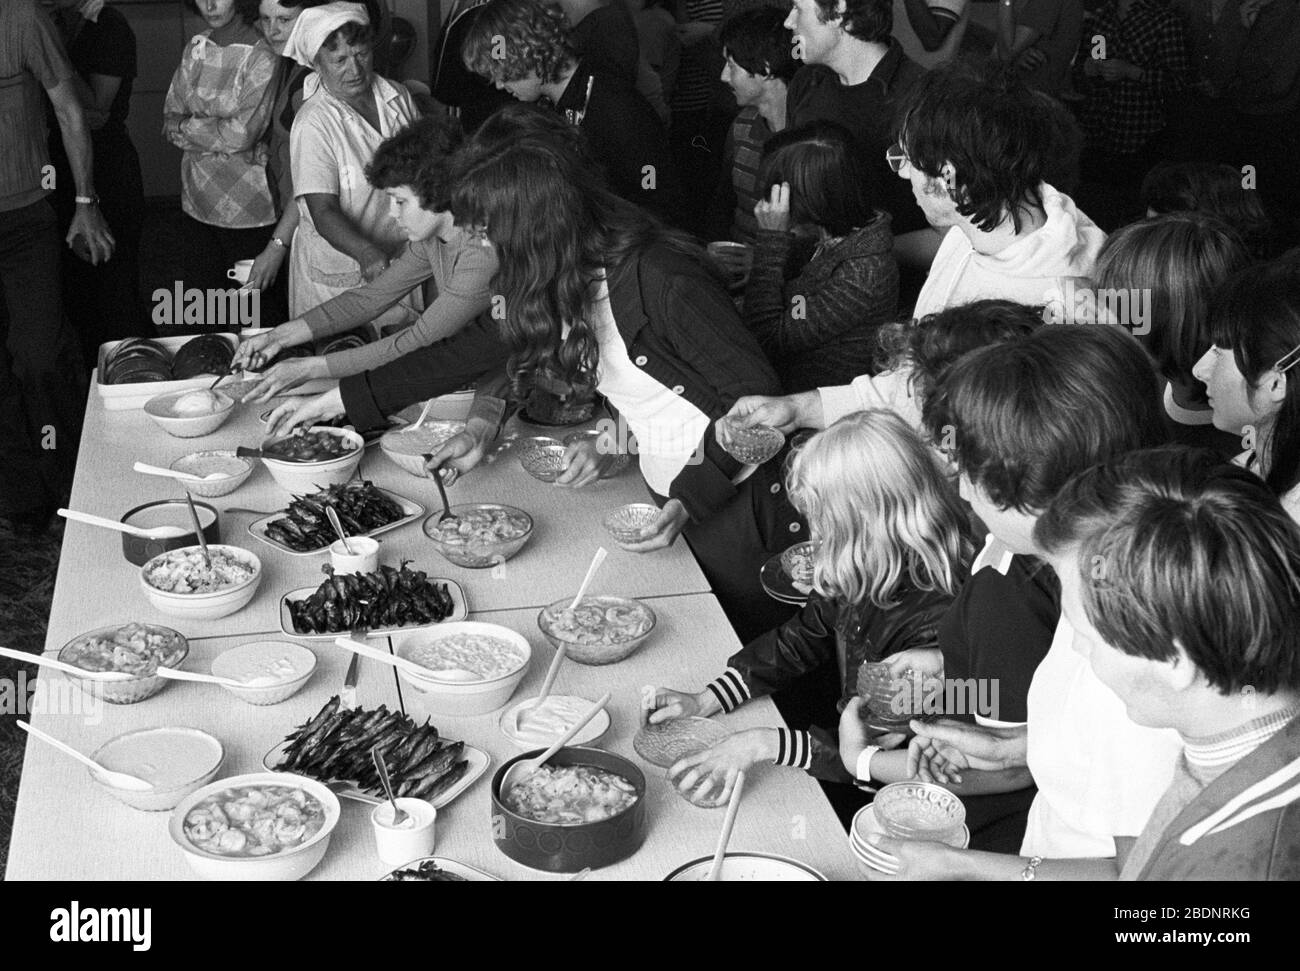 30 novembre 1979, Sassonia, Lipsia: âstorming la buffetâ fredda - durante un pomeriggio comune nel tempo libero all'inizio degli anni '80, gli ospiti âstormedâ il buffet freddo. Data esatta di registrazione non nota. Foto: Volkmar Heinz/dpa-Zentralbild/ZB Foto Stock